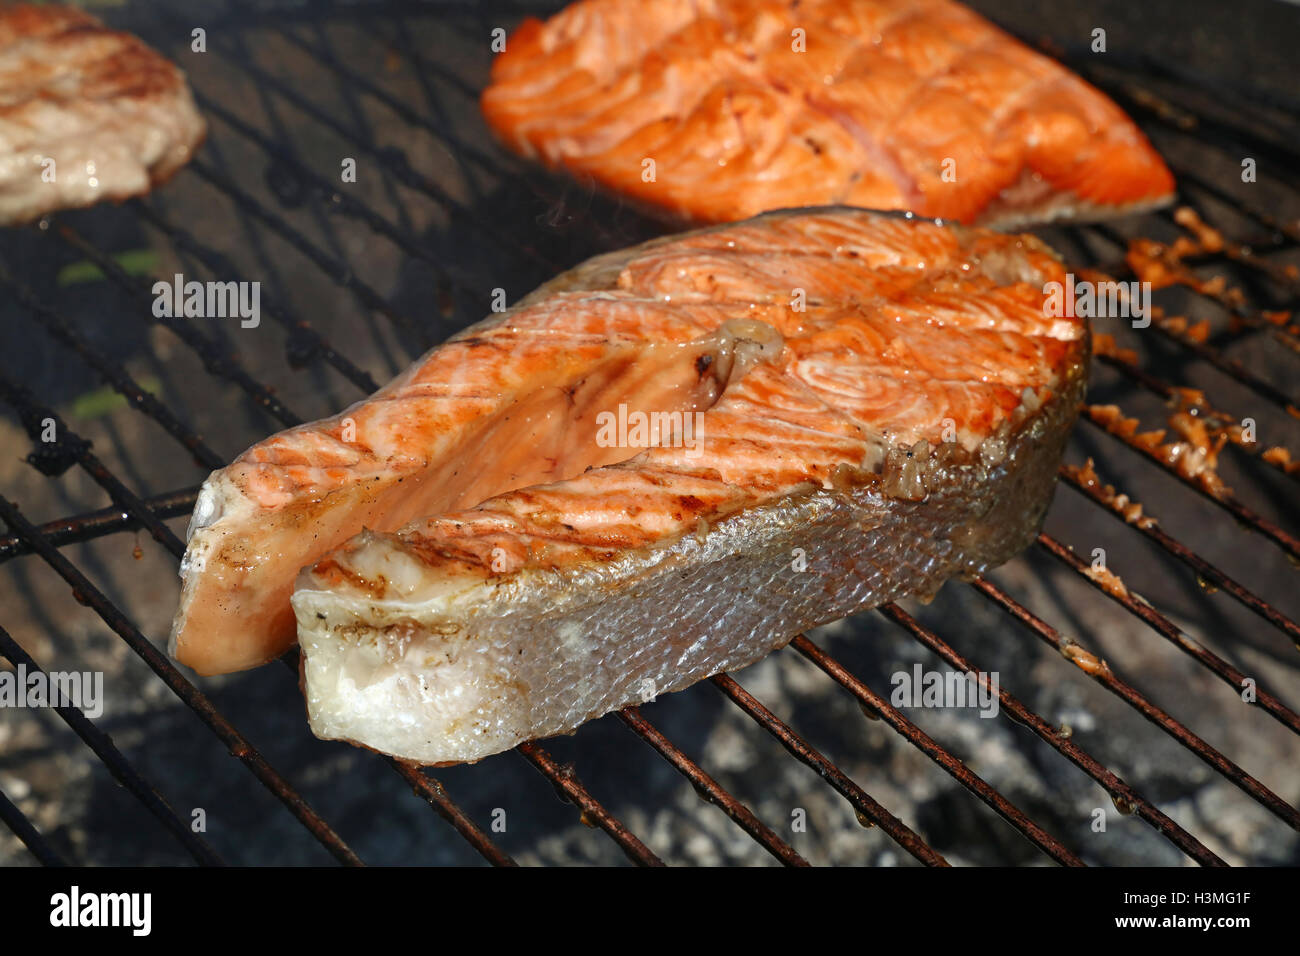 Poisson saumon grillé Steak barbecue, cuisine préparée sur barbecue, Close up Banque D'Images